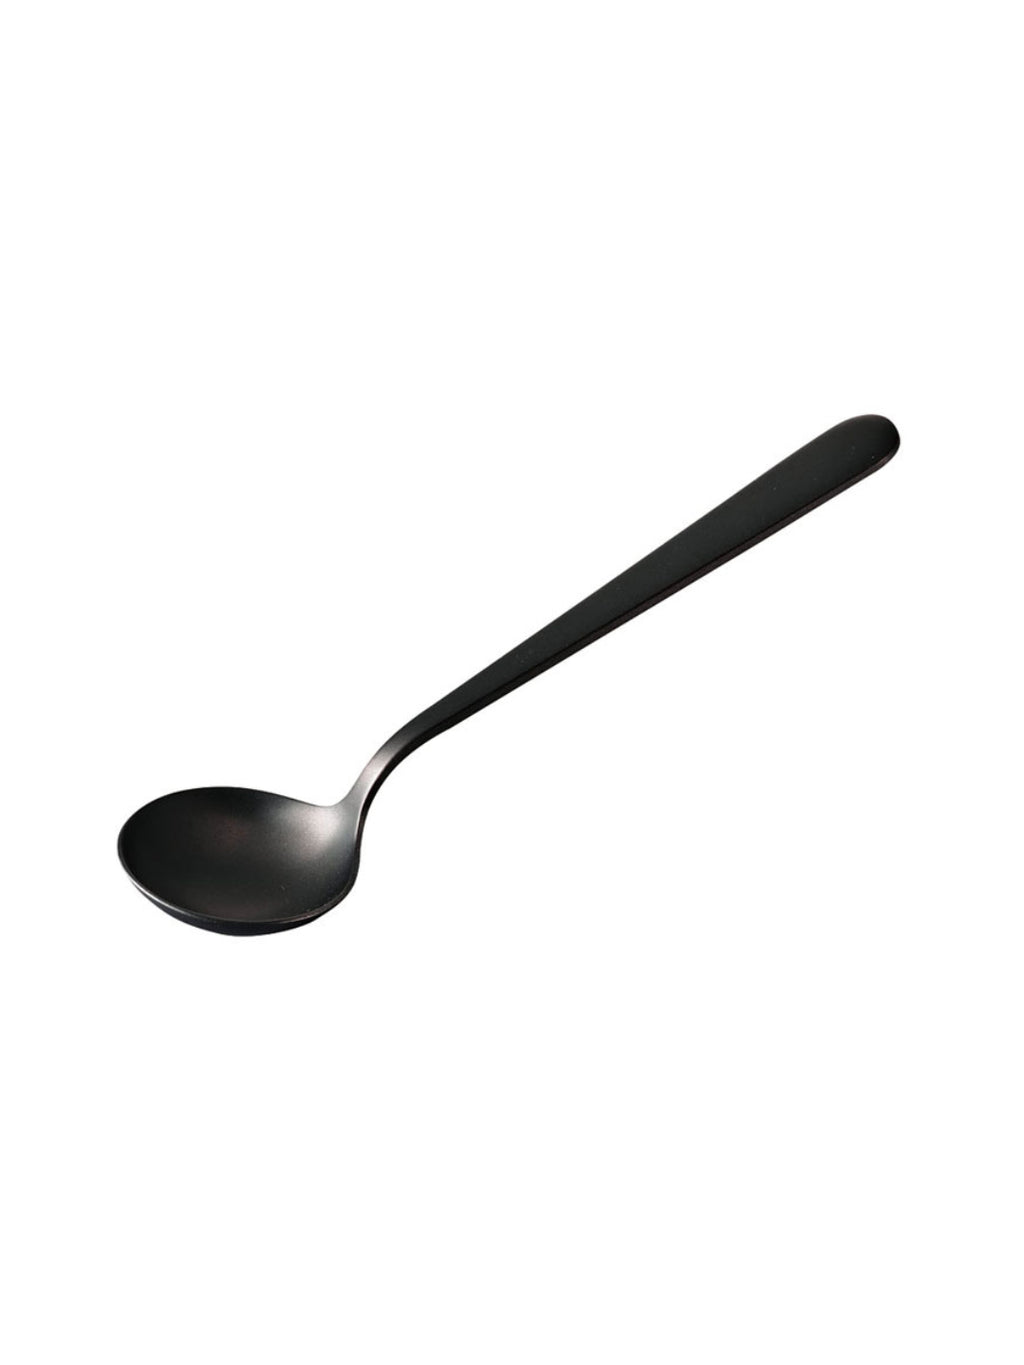 https://eightouncecoffee.ca/cdn/shop/products/hario_kcs-1-mb-kasuya-cupping-spoon.jpg?v=1652806842&width=1024